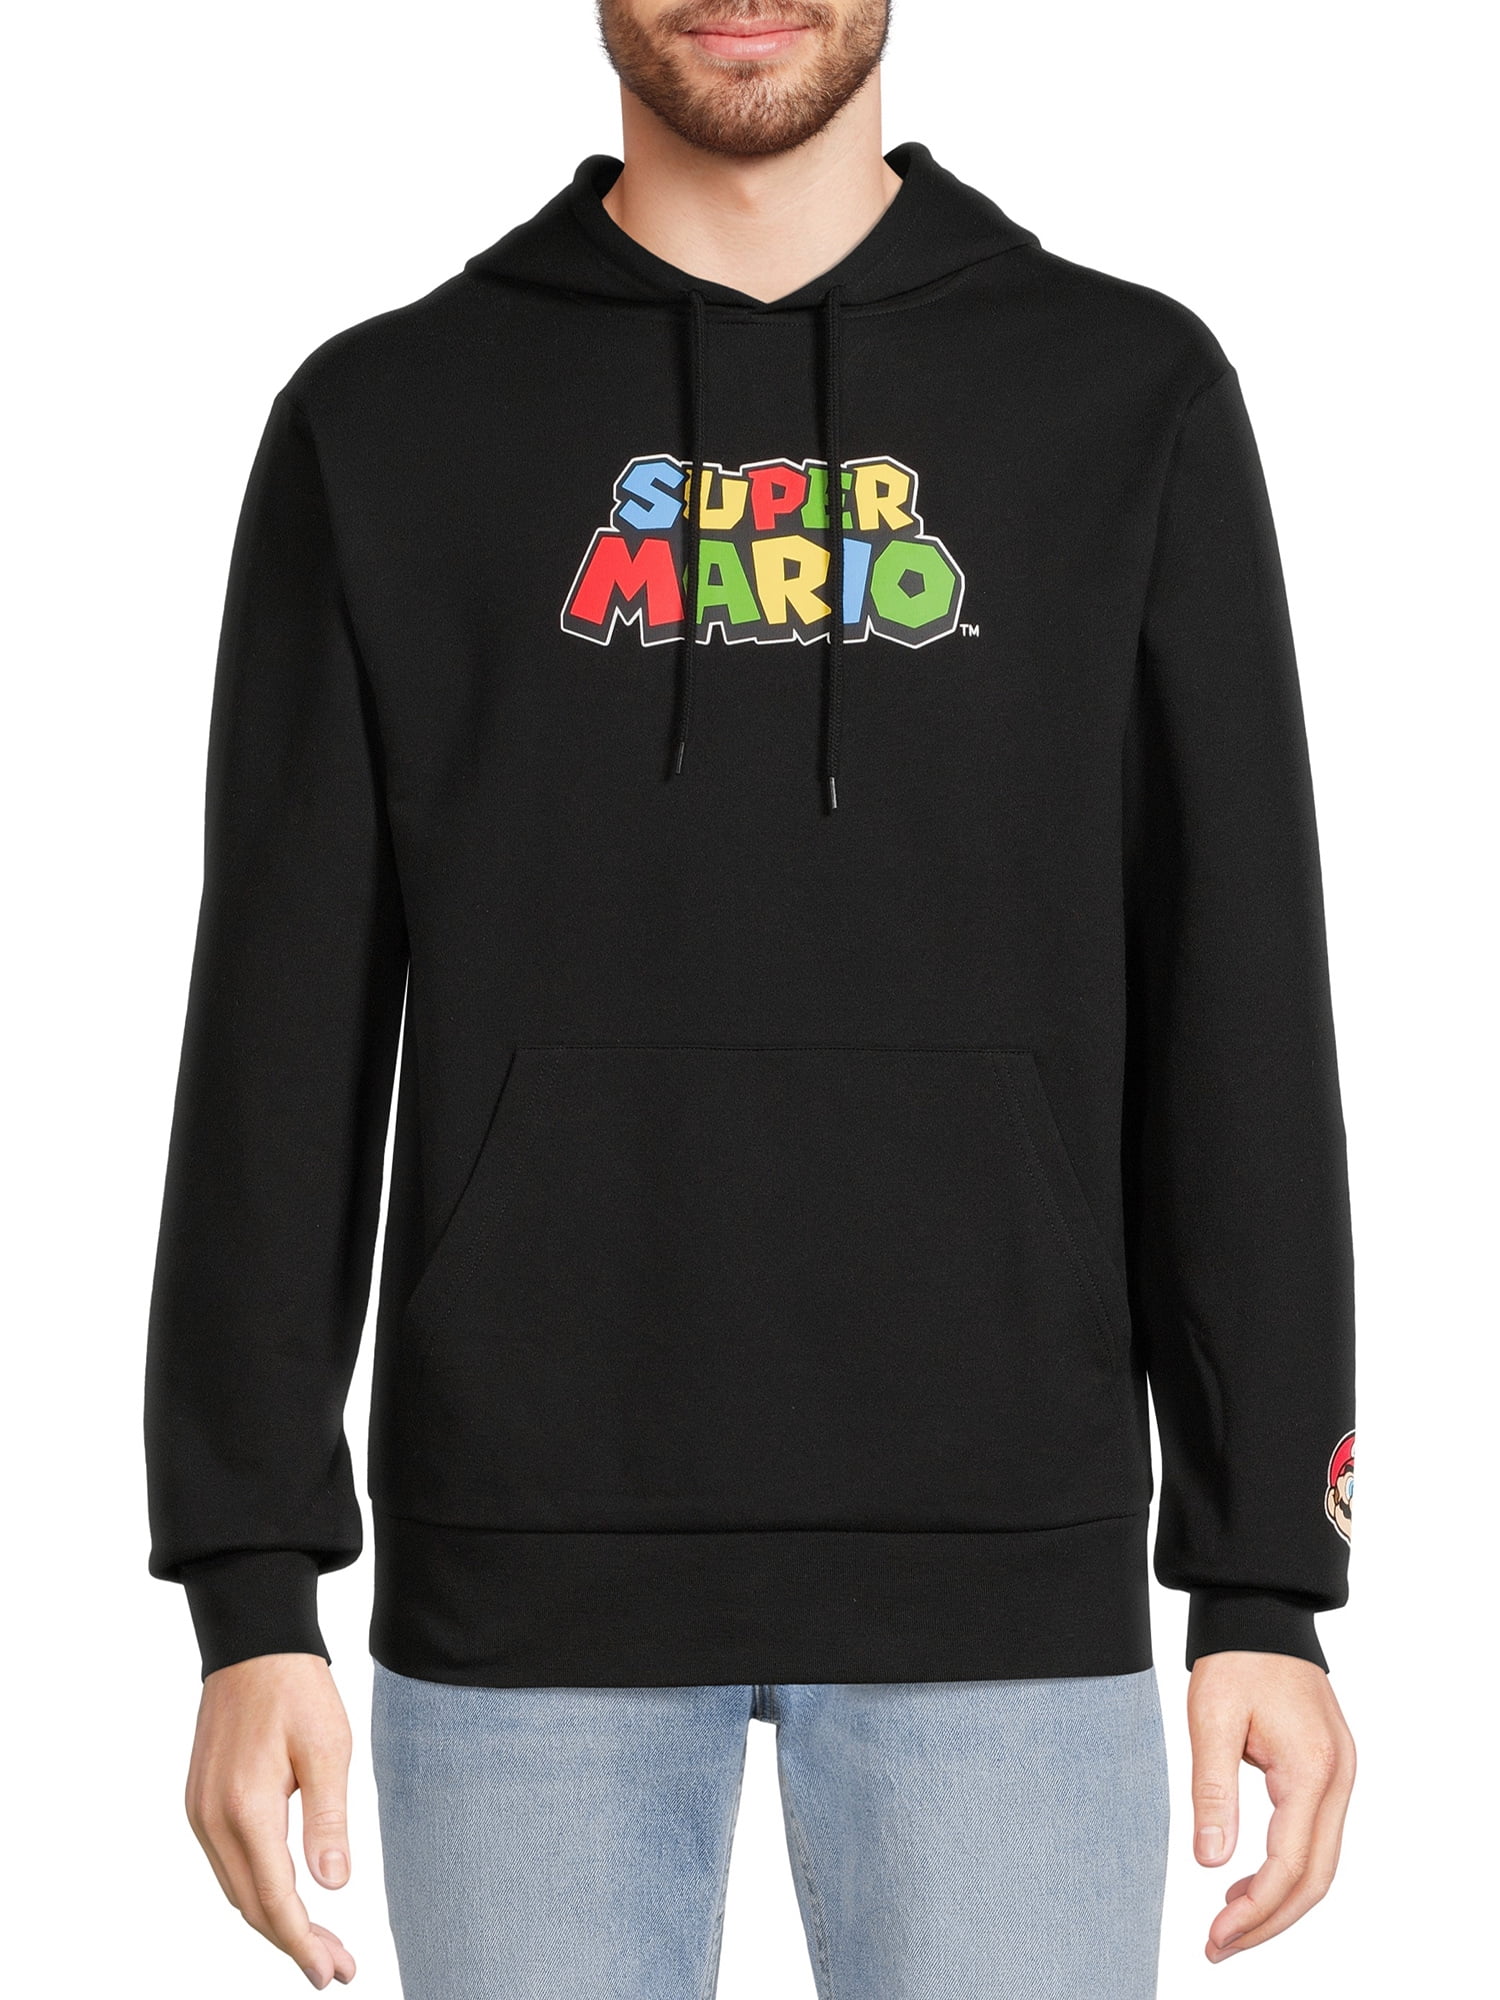 Super Mario Sweat-Shirt Veste à Capuche imprimée Classique Keep Keep Warm ouatée garçon